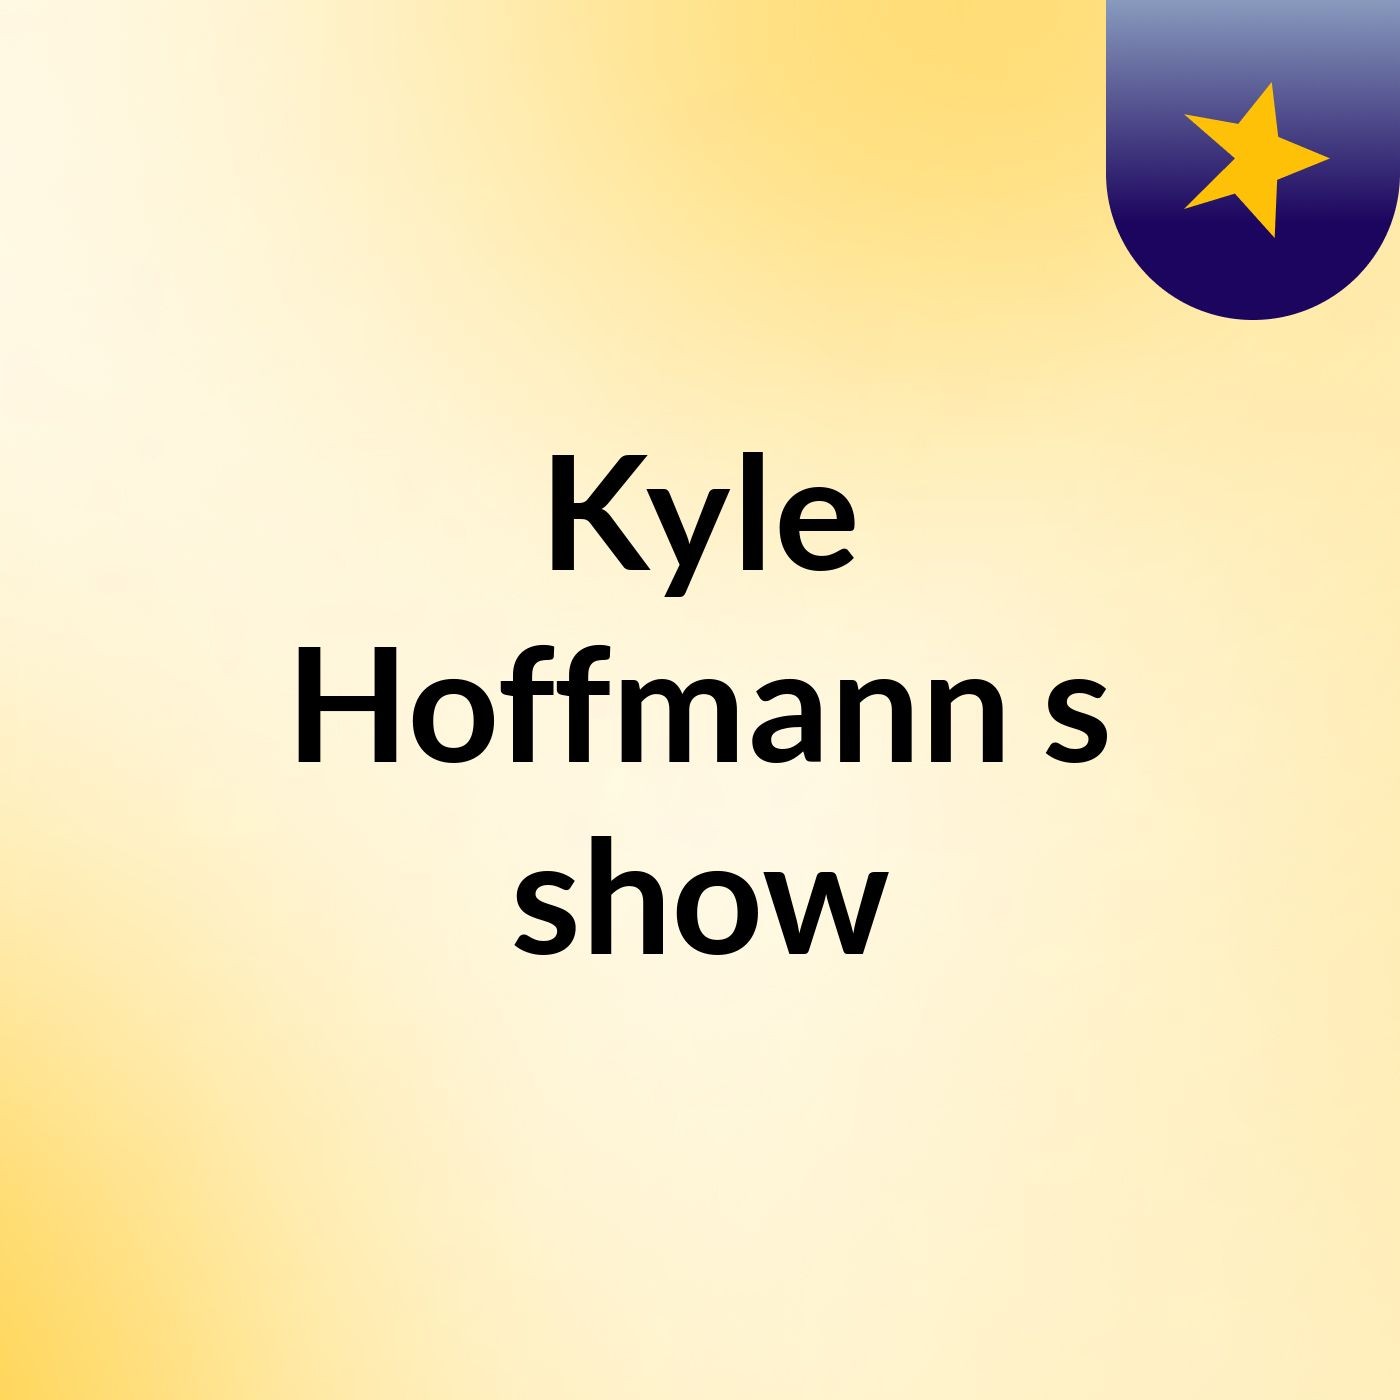 Kyle Hoffmann's show